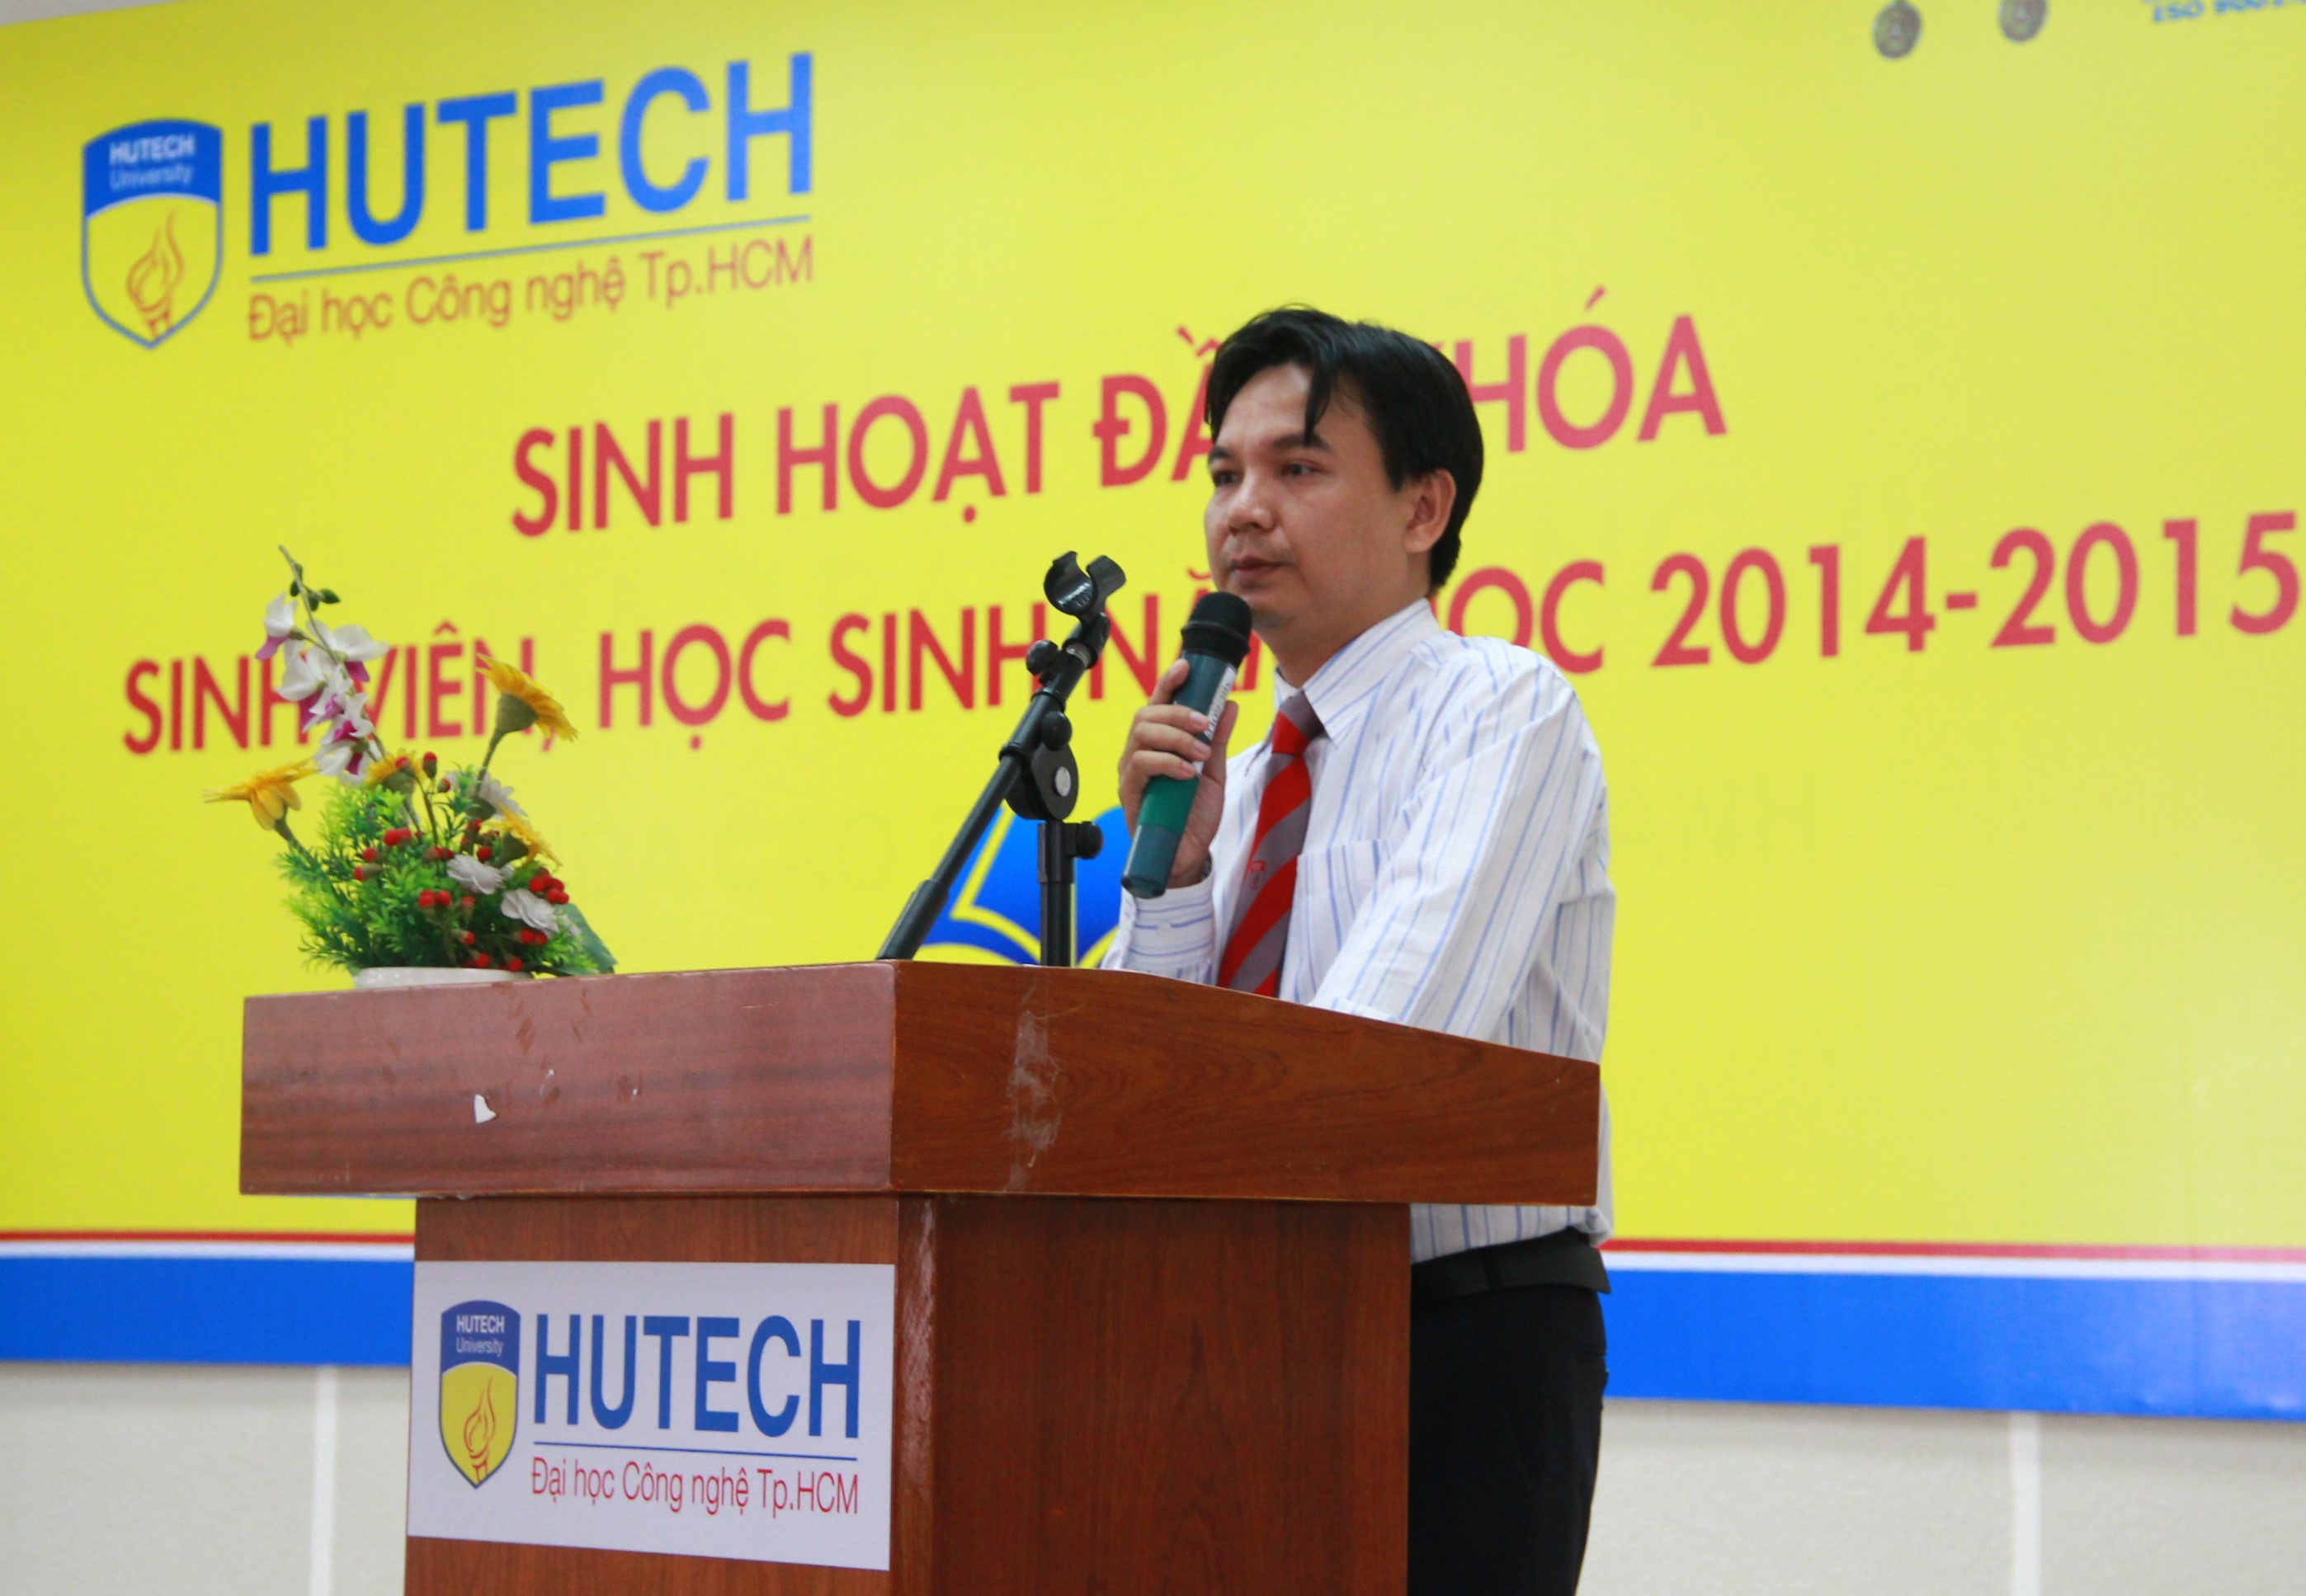 Khoa CĐTH HUTECH khai giảng Đợt 1 năm 2014 16